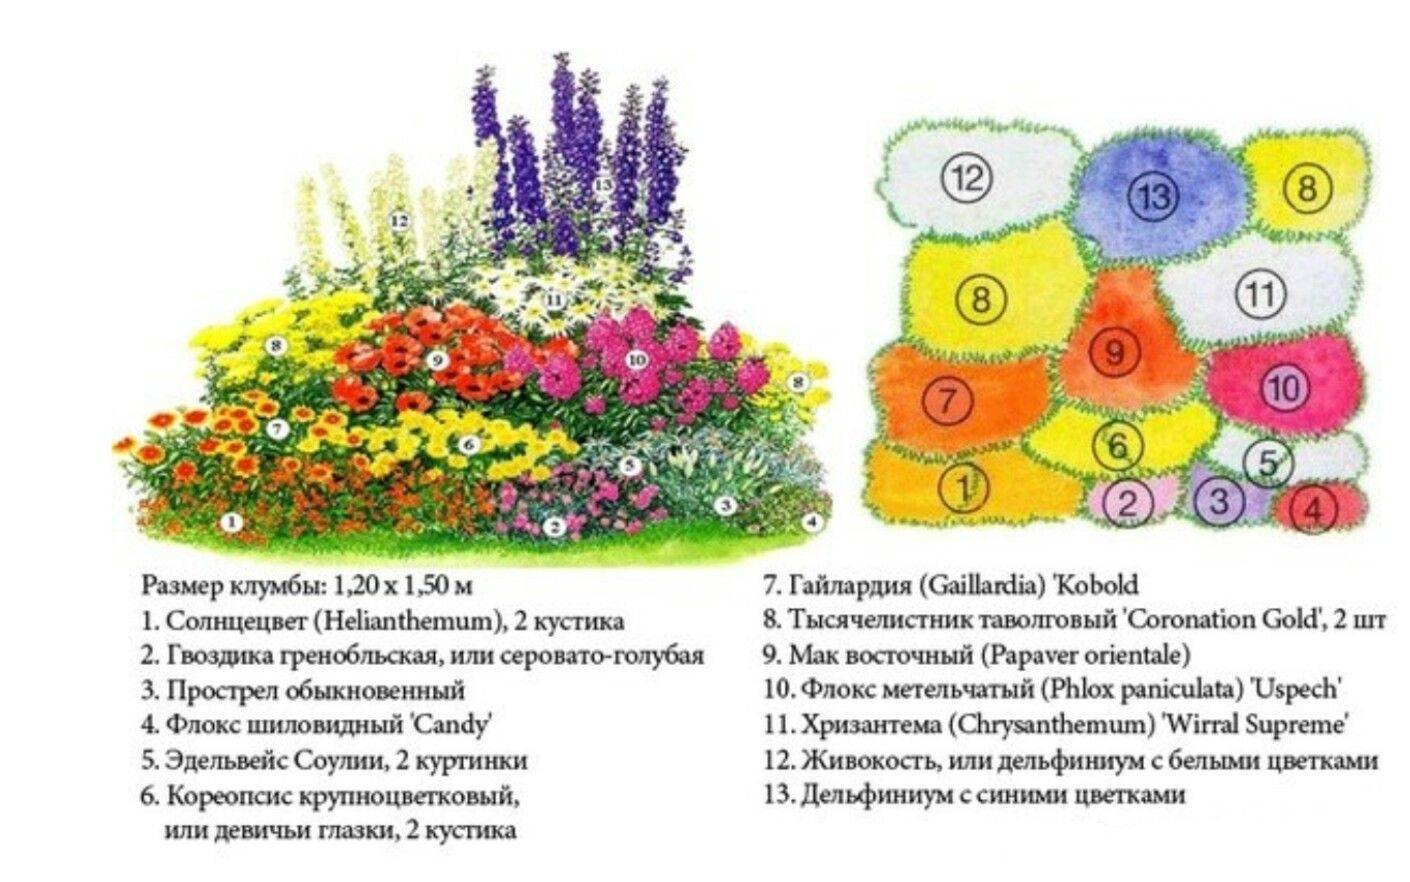 Миксбордер – пошаговое руководство по созданию цветника с примерами